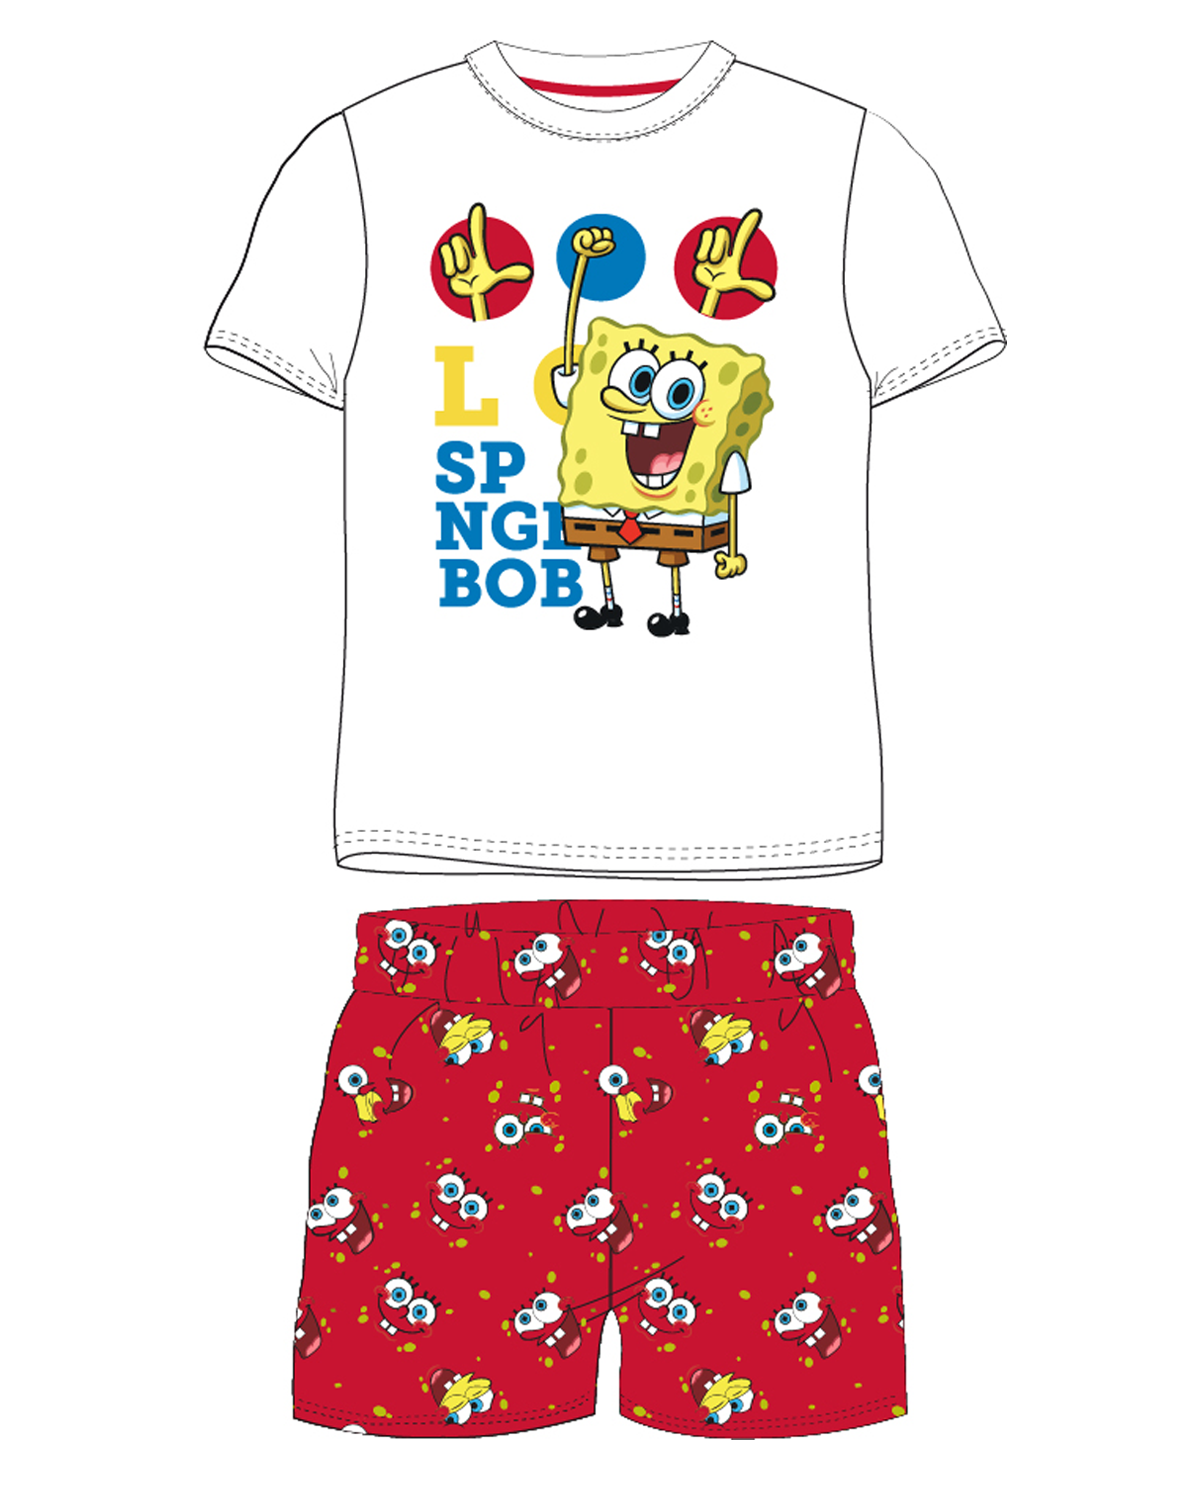 SpongeBob v kalhotách - licence Chlapecké pyžamo - SpongeBob v kalhotách 5204203W, bílá / červená Barva: Mix barev, Velikost: 134